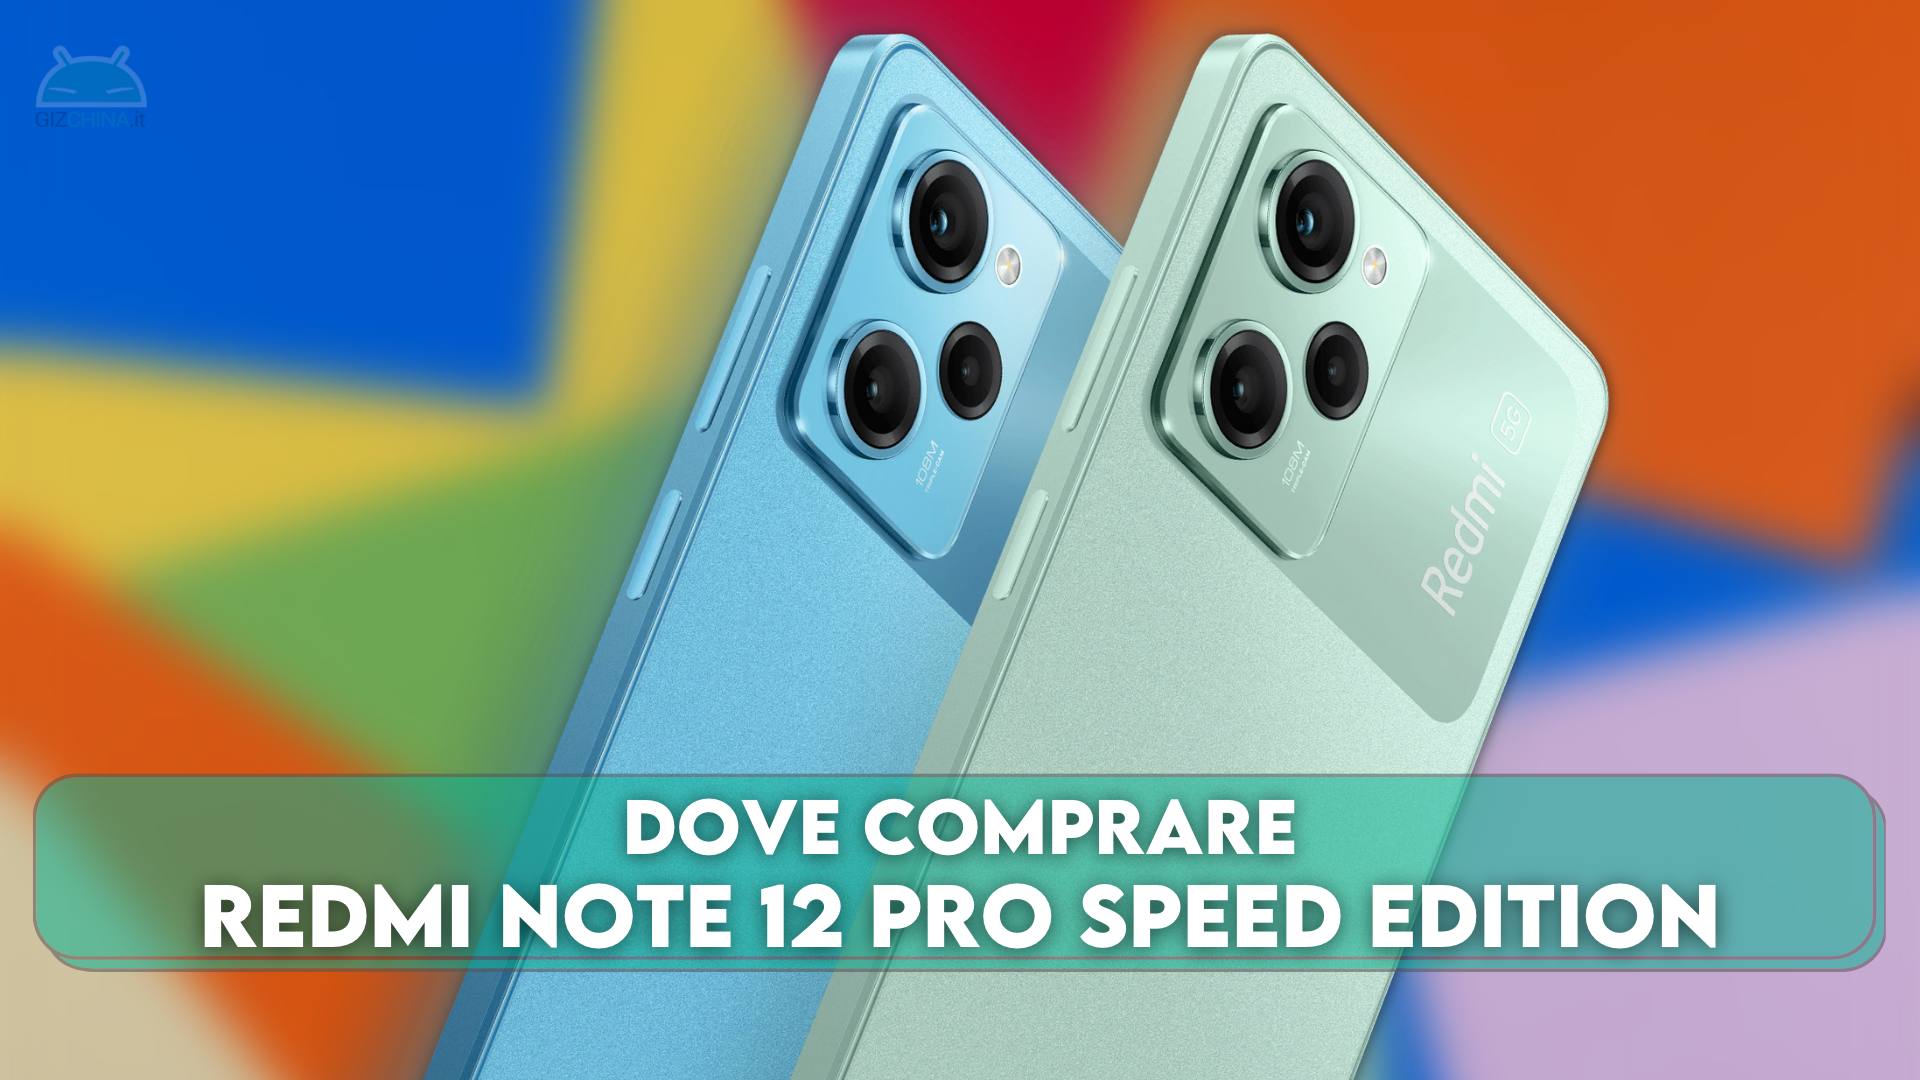 Note 12 speed edition. Redmi Note 12 Pro Speed Edition. Redmi Note 12 Pro Speed Edition (Redwood);.